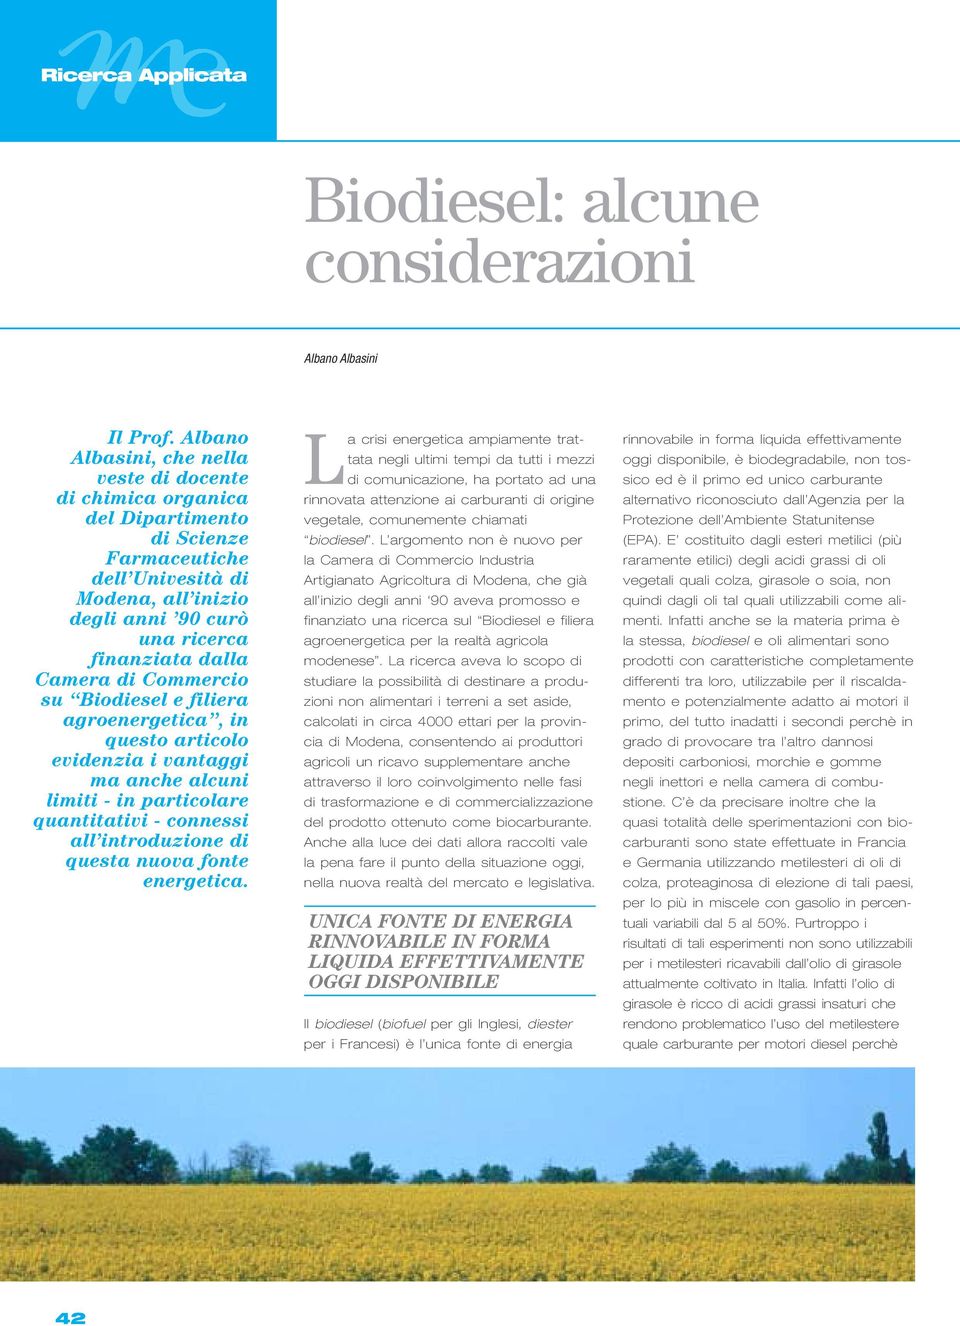 di Commercio su Biodiesel e filiera agroenergetica, in questo articolo evidenzia i vantaggi ma anche alcuni limiti - in particolare quantitativi - connessi all introduzione di questa nuova fonte